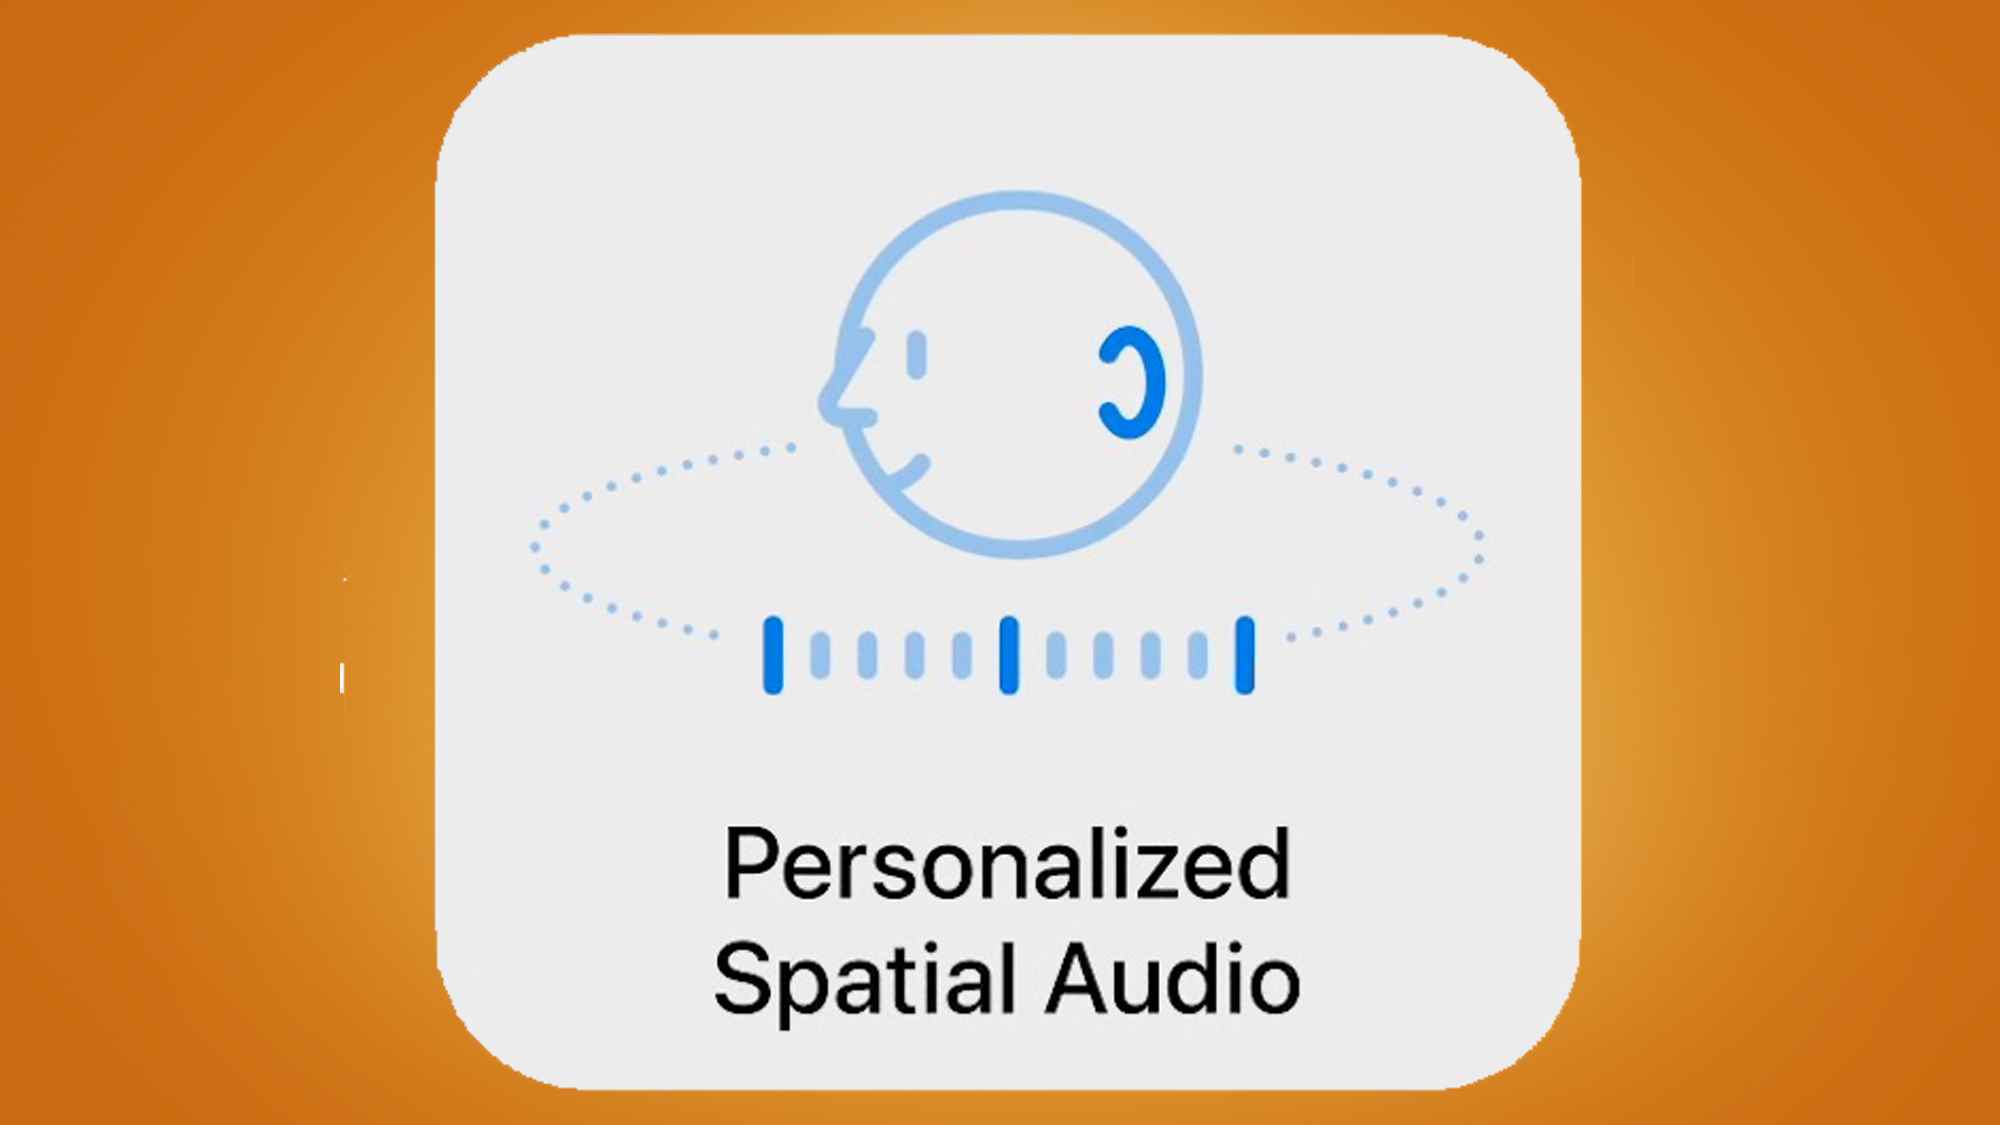 Apple'ın kişiselleştirilmiş mekansal ses teknolojisi için bir logo